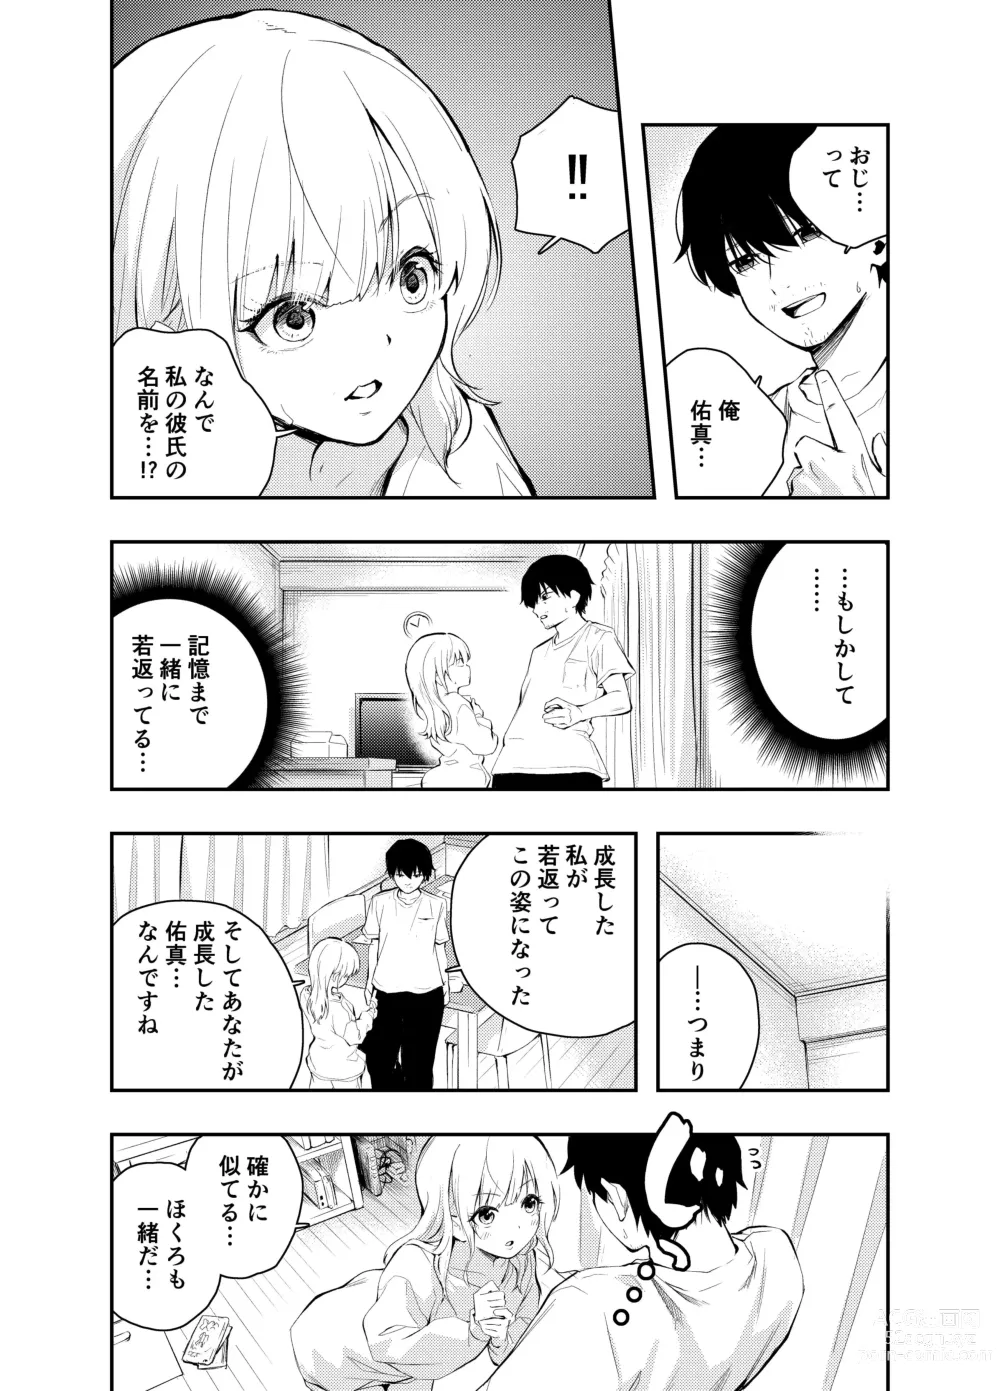 Page 6 of doujinshi Mukashi no Sugata ni Modotta Tsuma to no Sex wa Uwaki desu ka?